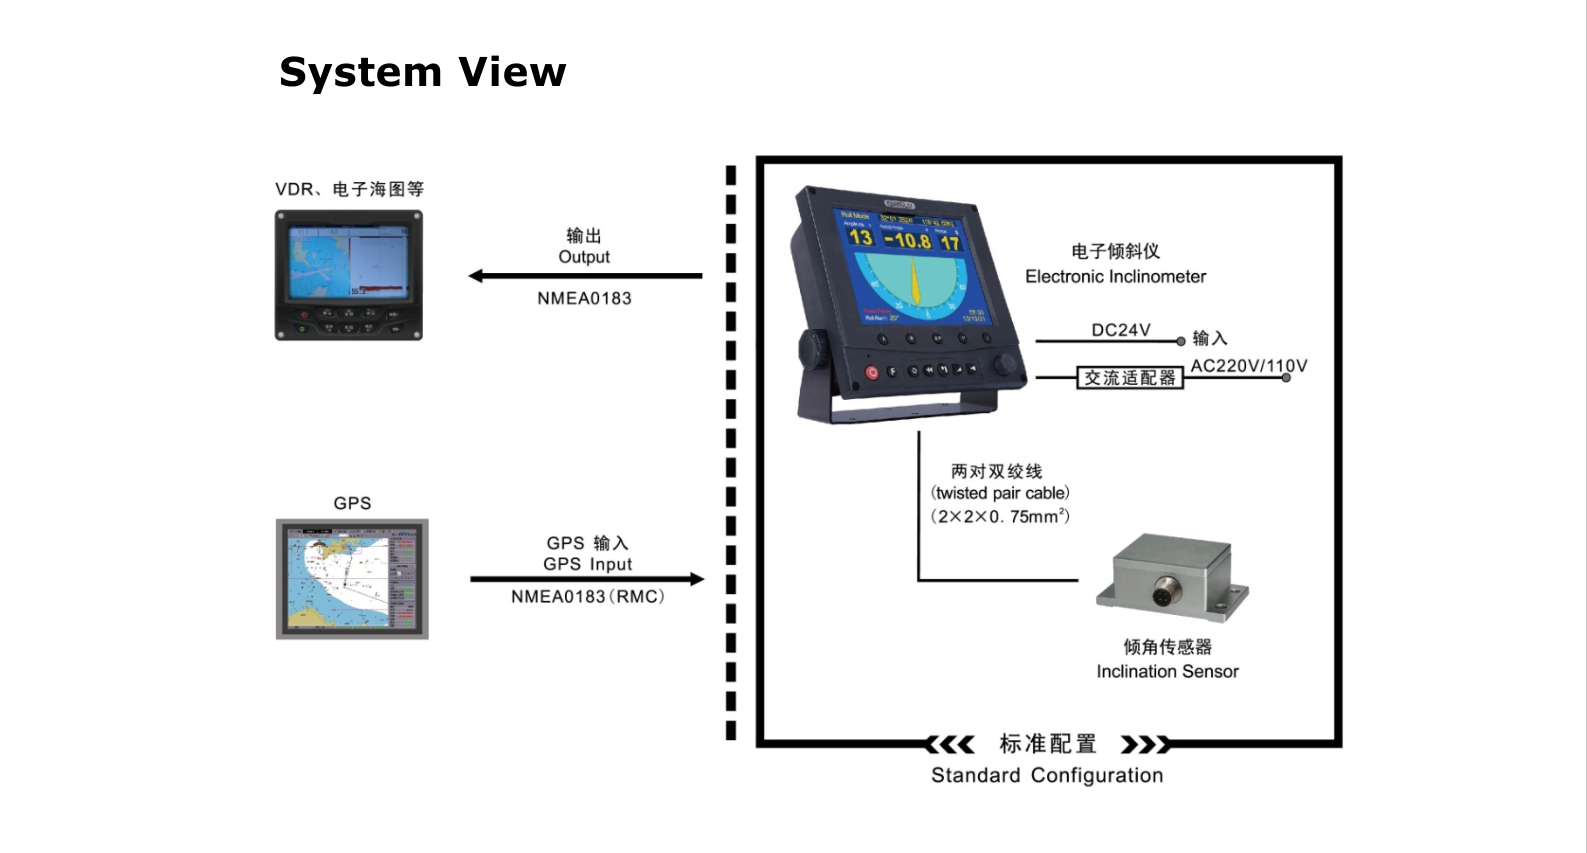 IM330 System View